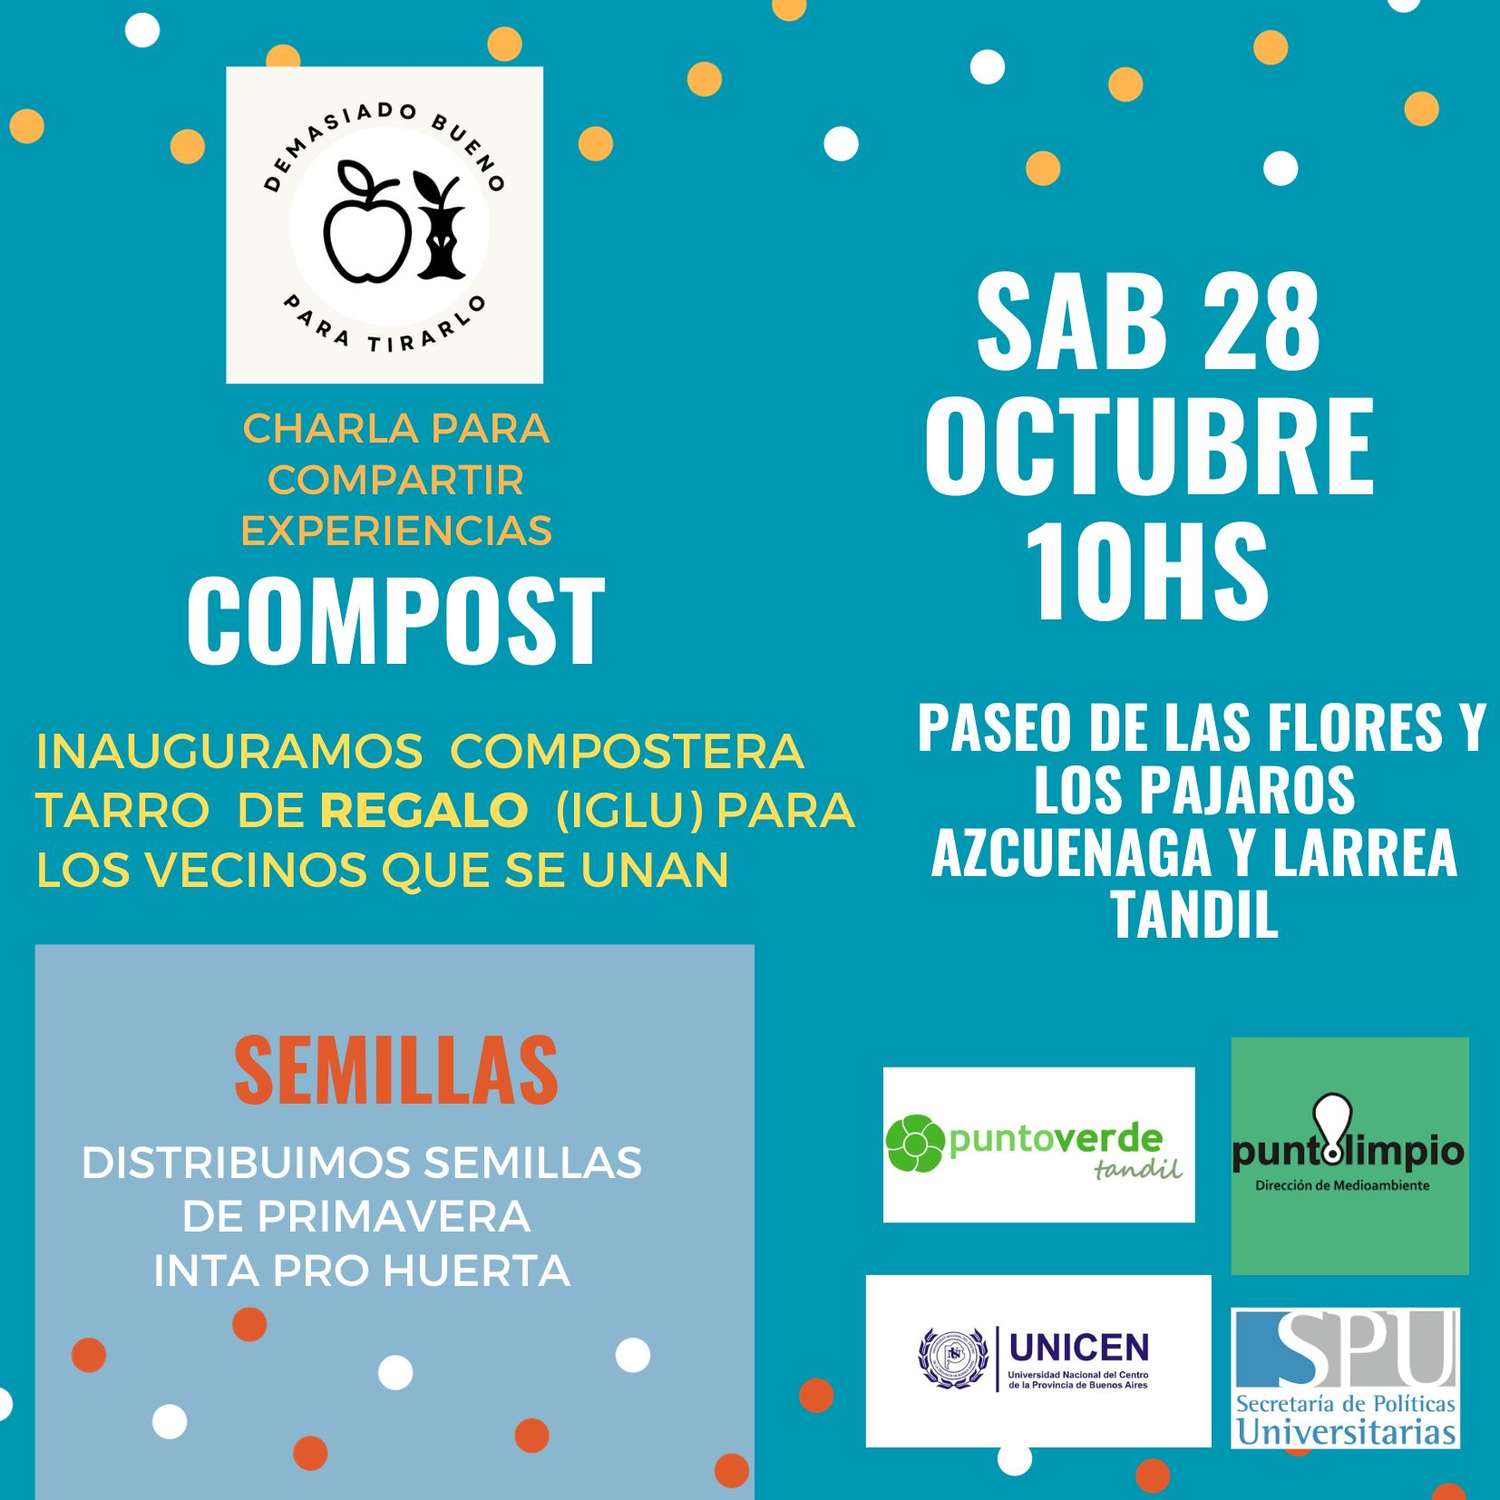 El evento será el sábado 28, en Azcuénaga y Larrea.